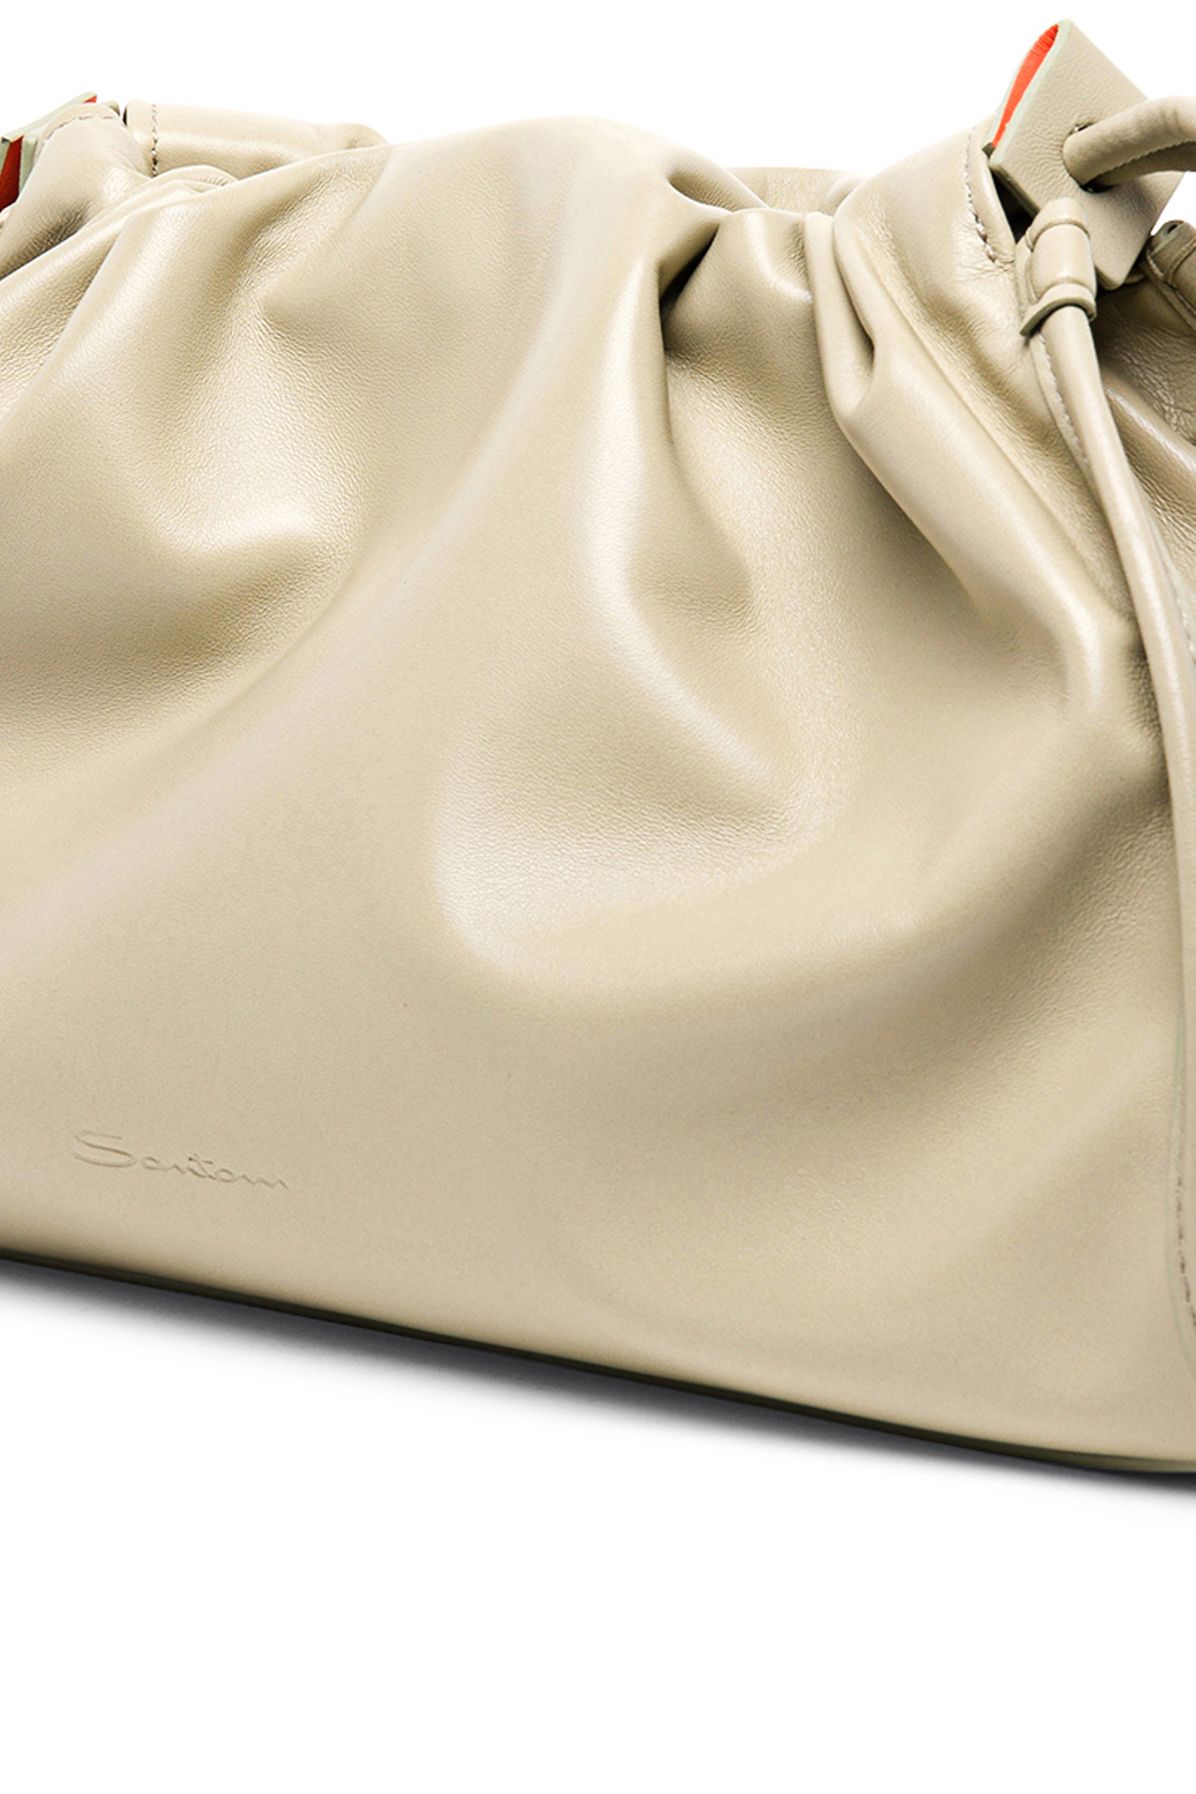 Santoni Leather pouch